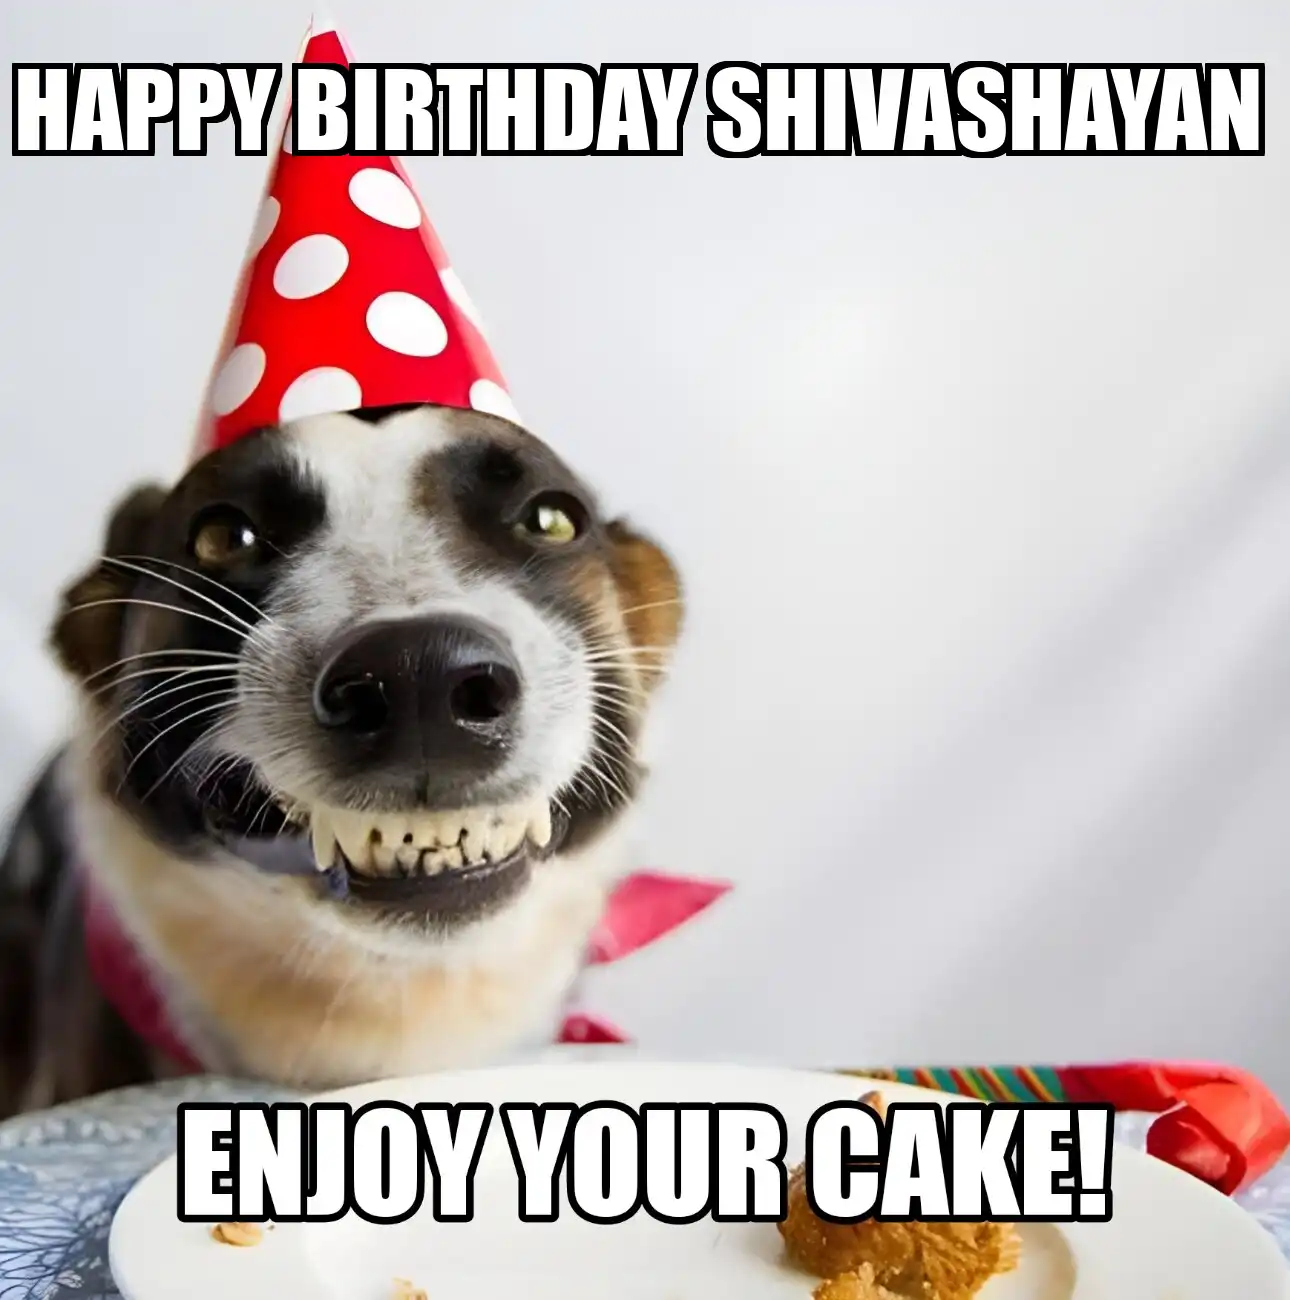 Happy Birthday Shivashayan Enjoy Your Cake Dog Meme